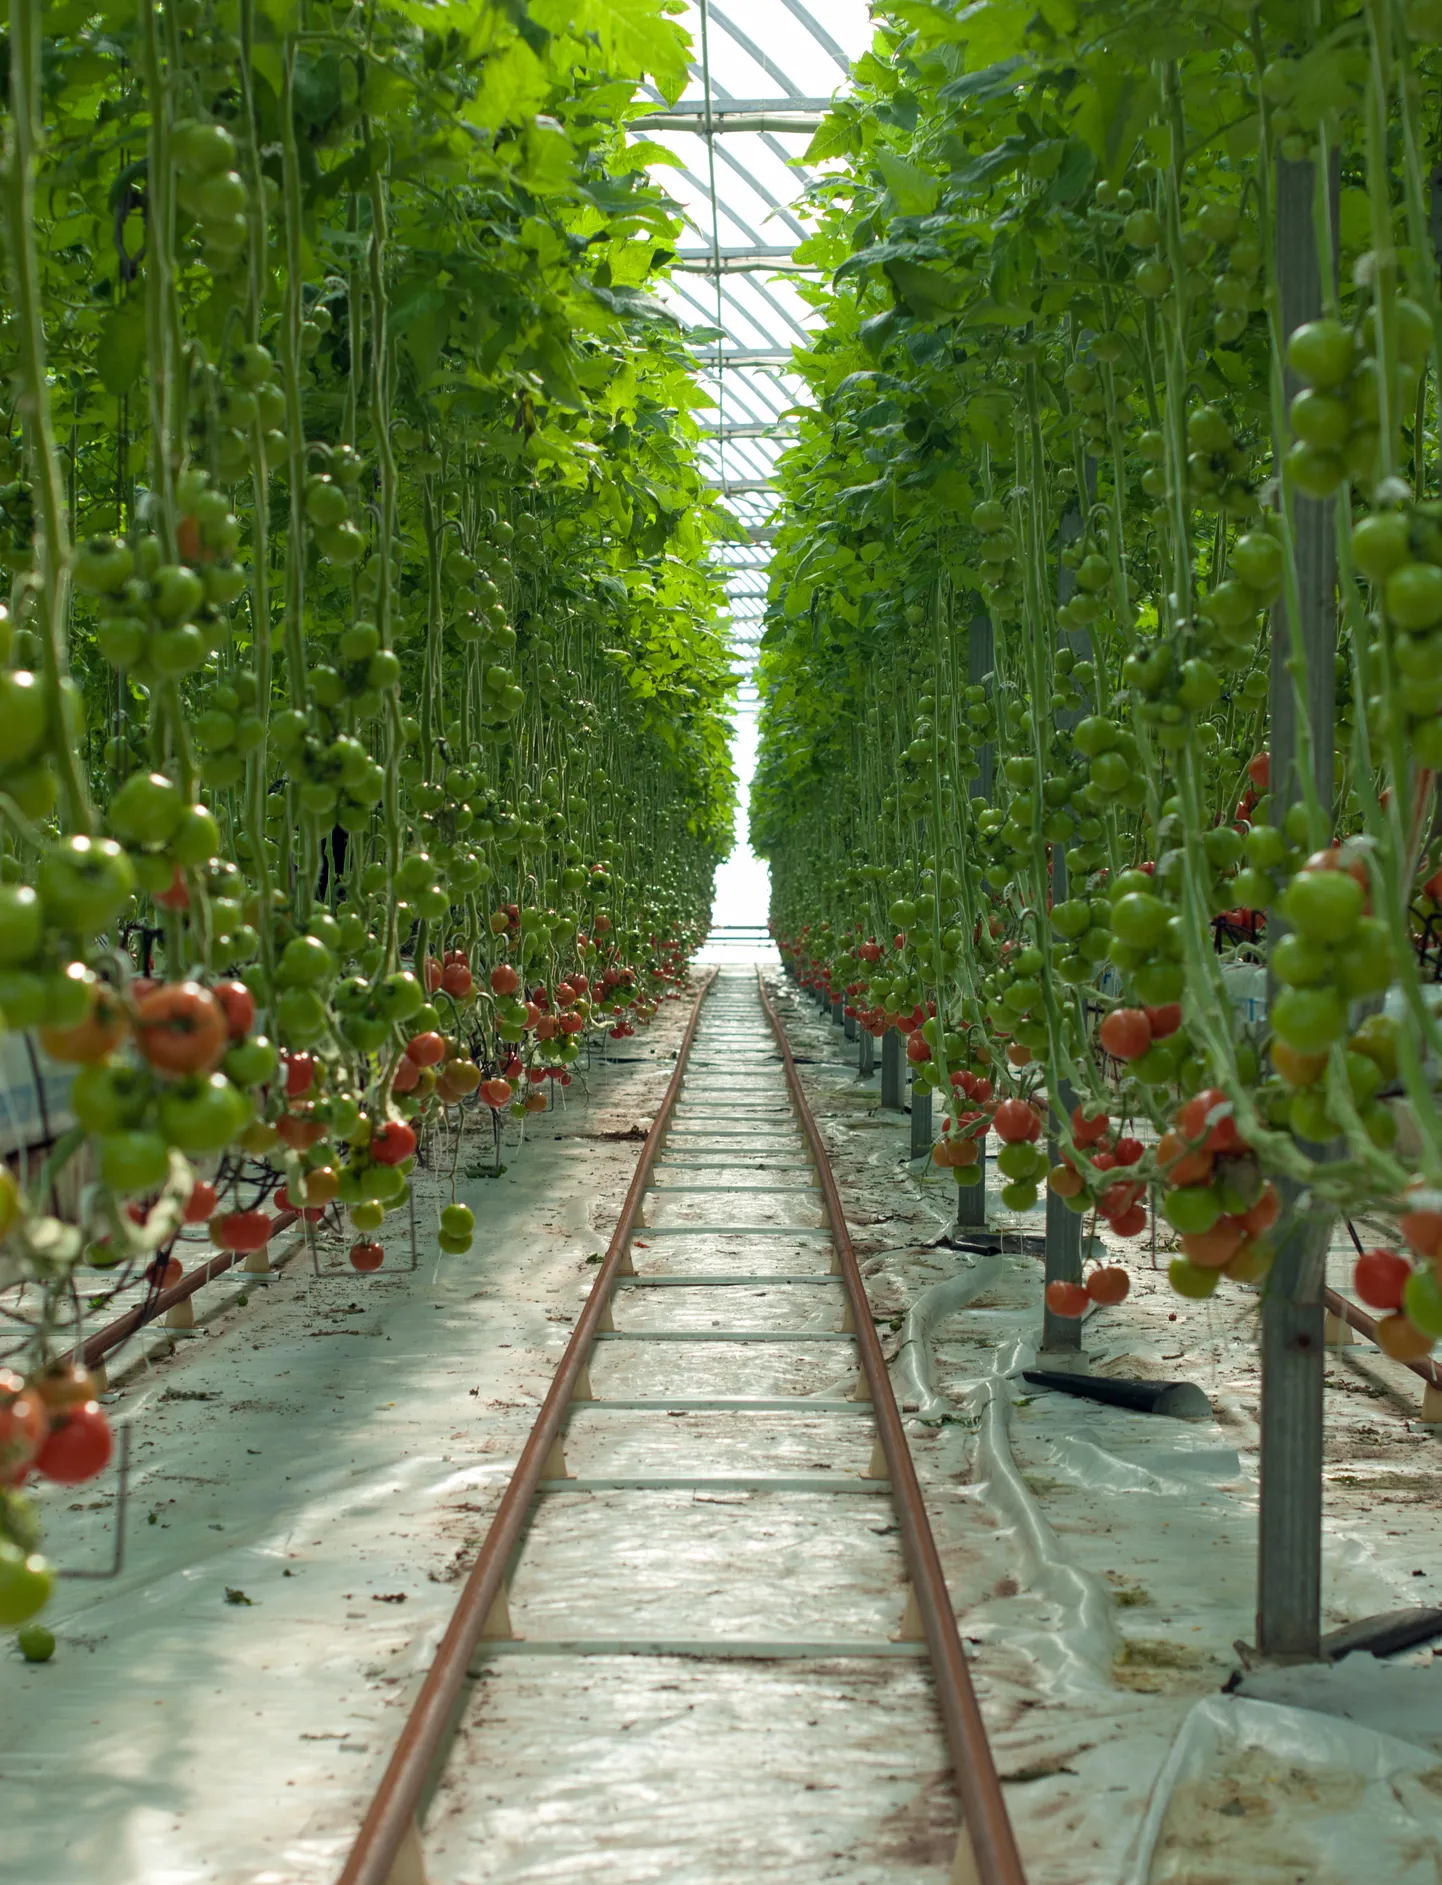 Kasvuhoone ja tomatid. Pilt on illustreeriv